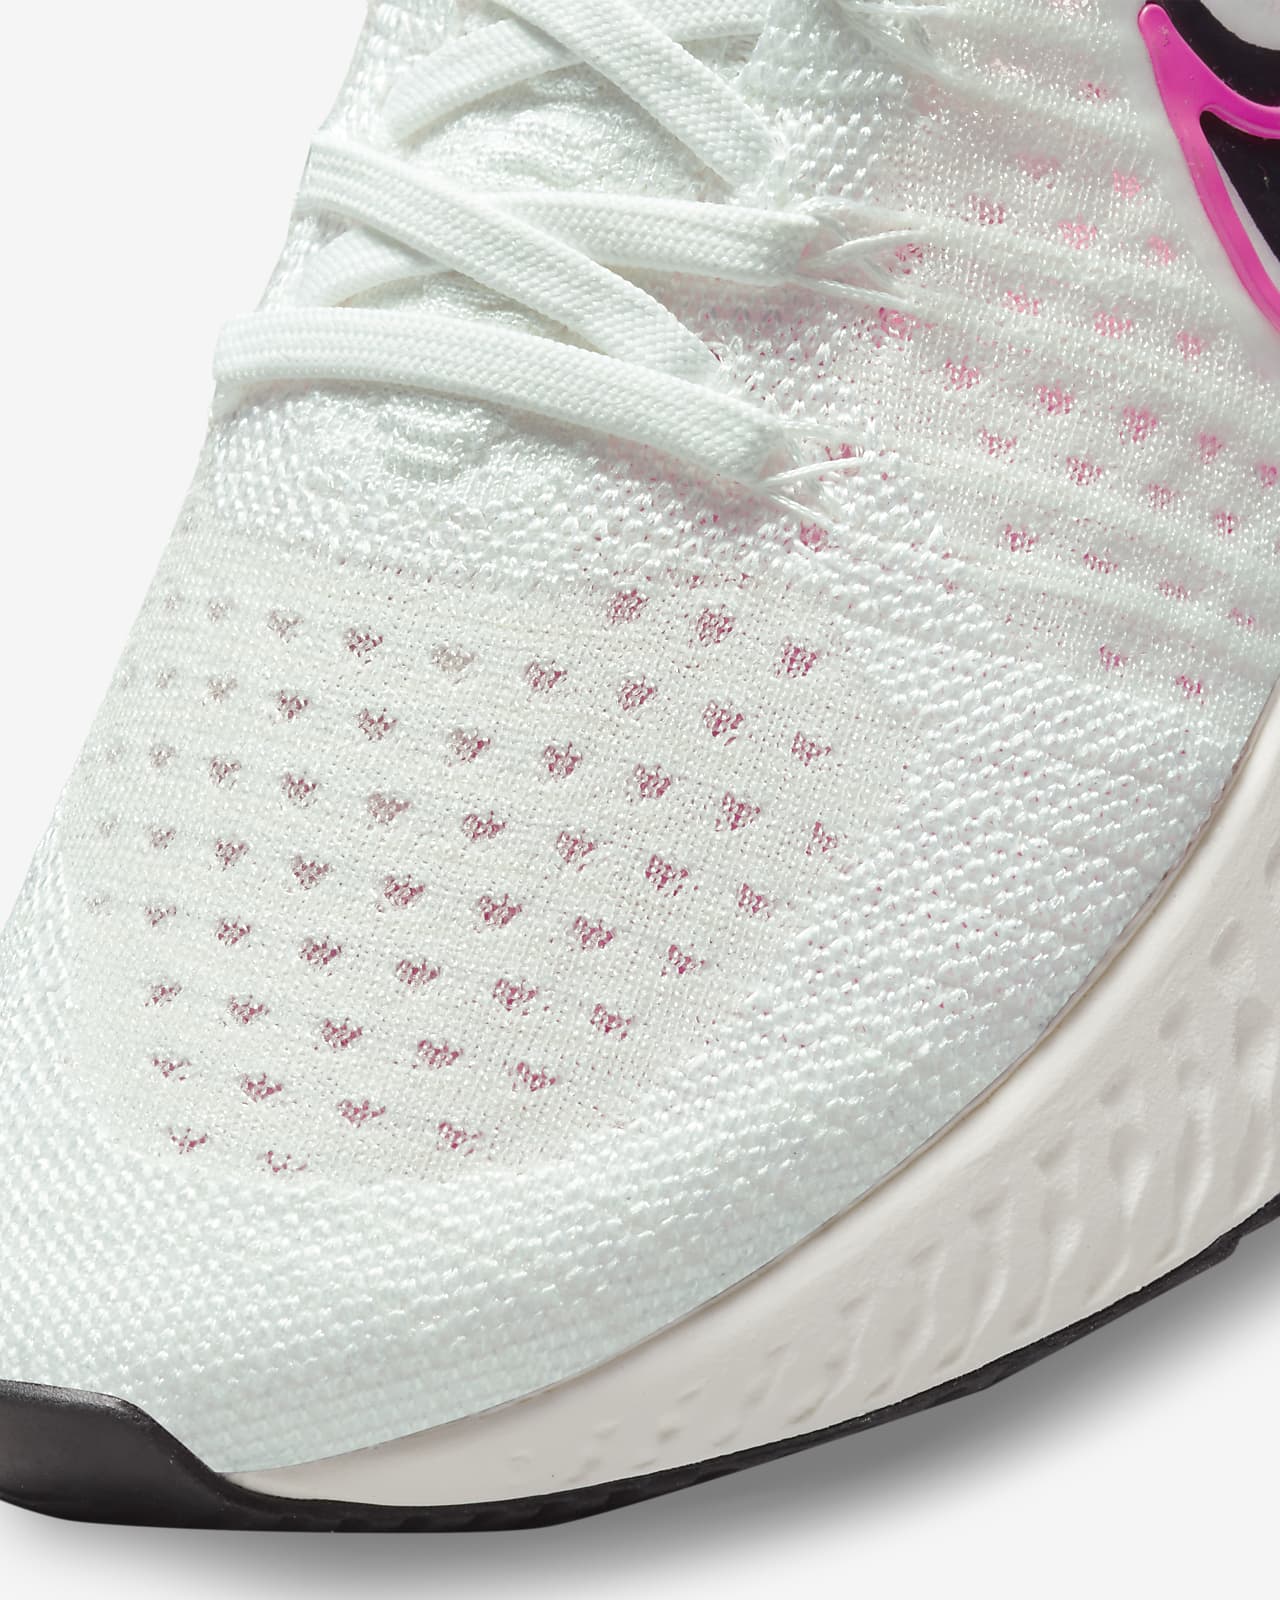 Nike Women's React Infinity Run Flyknit 2 Running Shoes